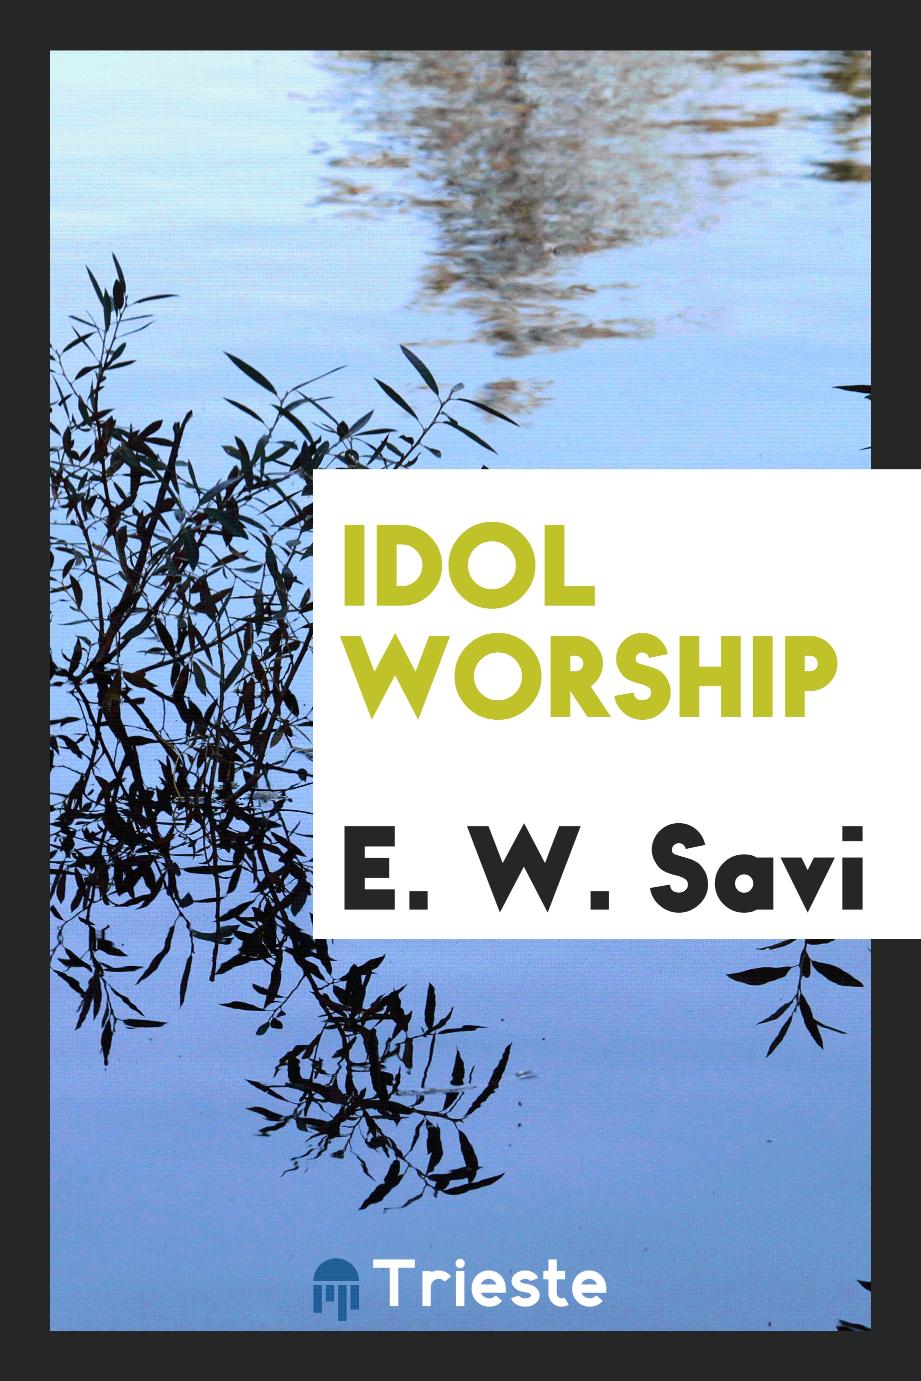 Idol worship